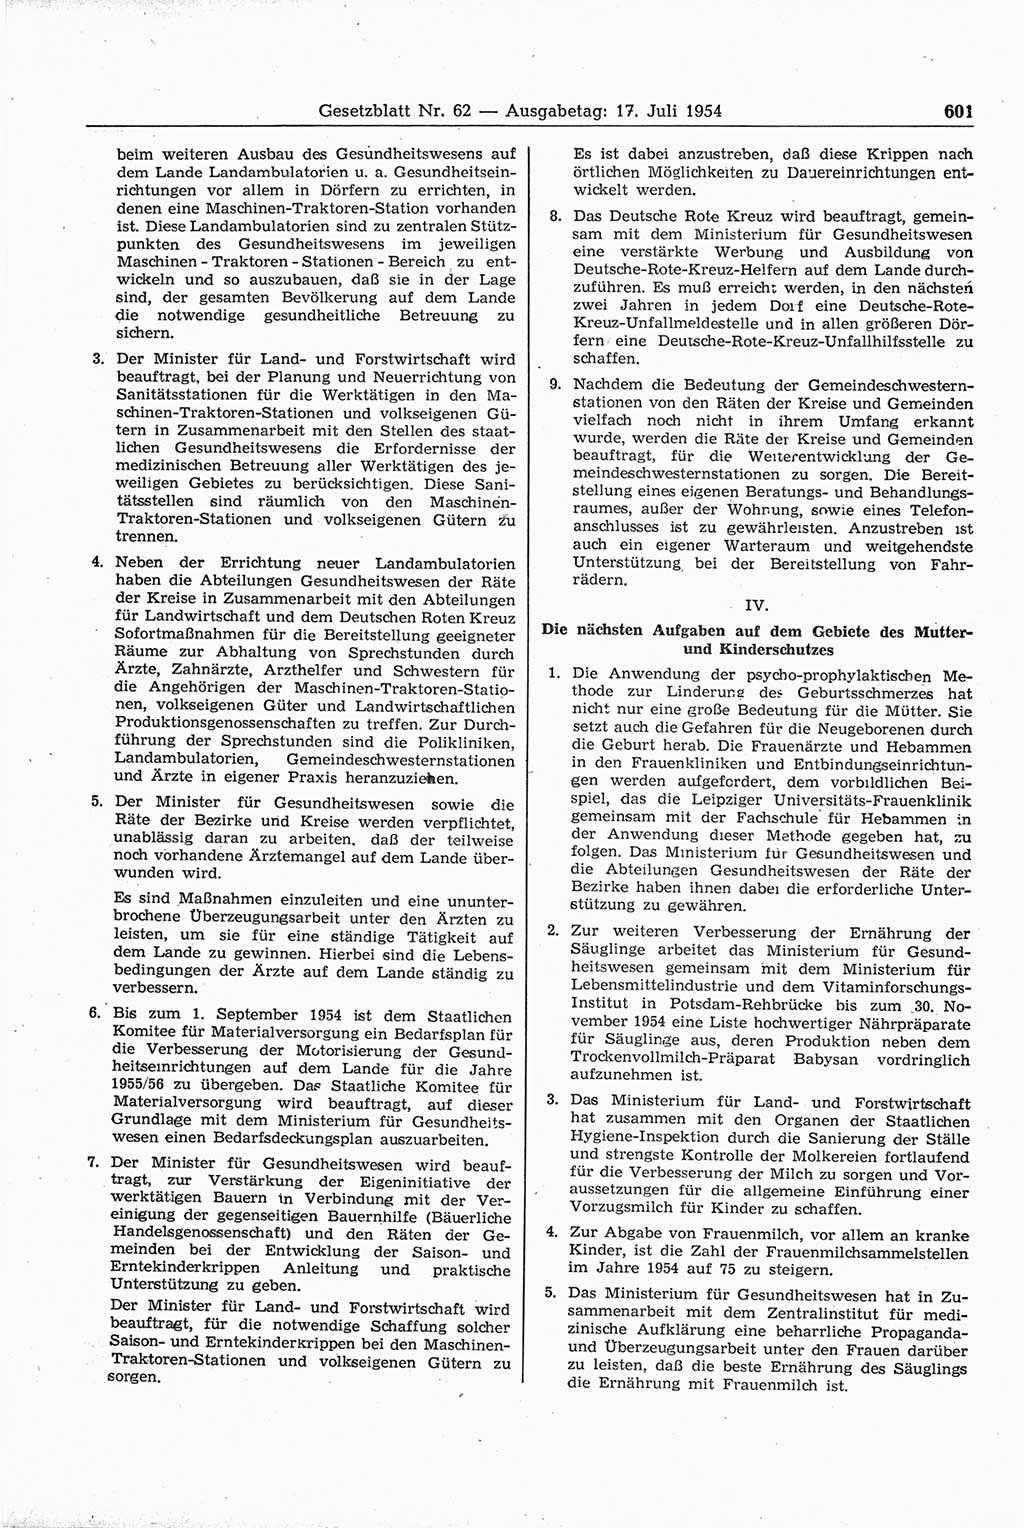 Gesetzblatt (GBl.) der Deutschen Demokratischen Republik (DDR) 1954, Seite 601 (GBl. DDR 1954, S. 601)